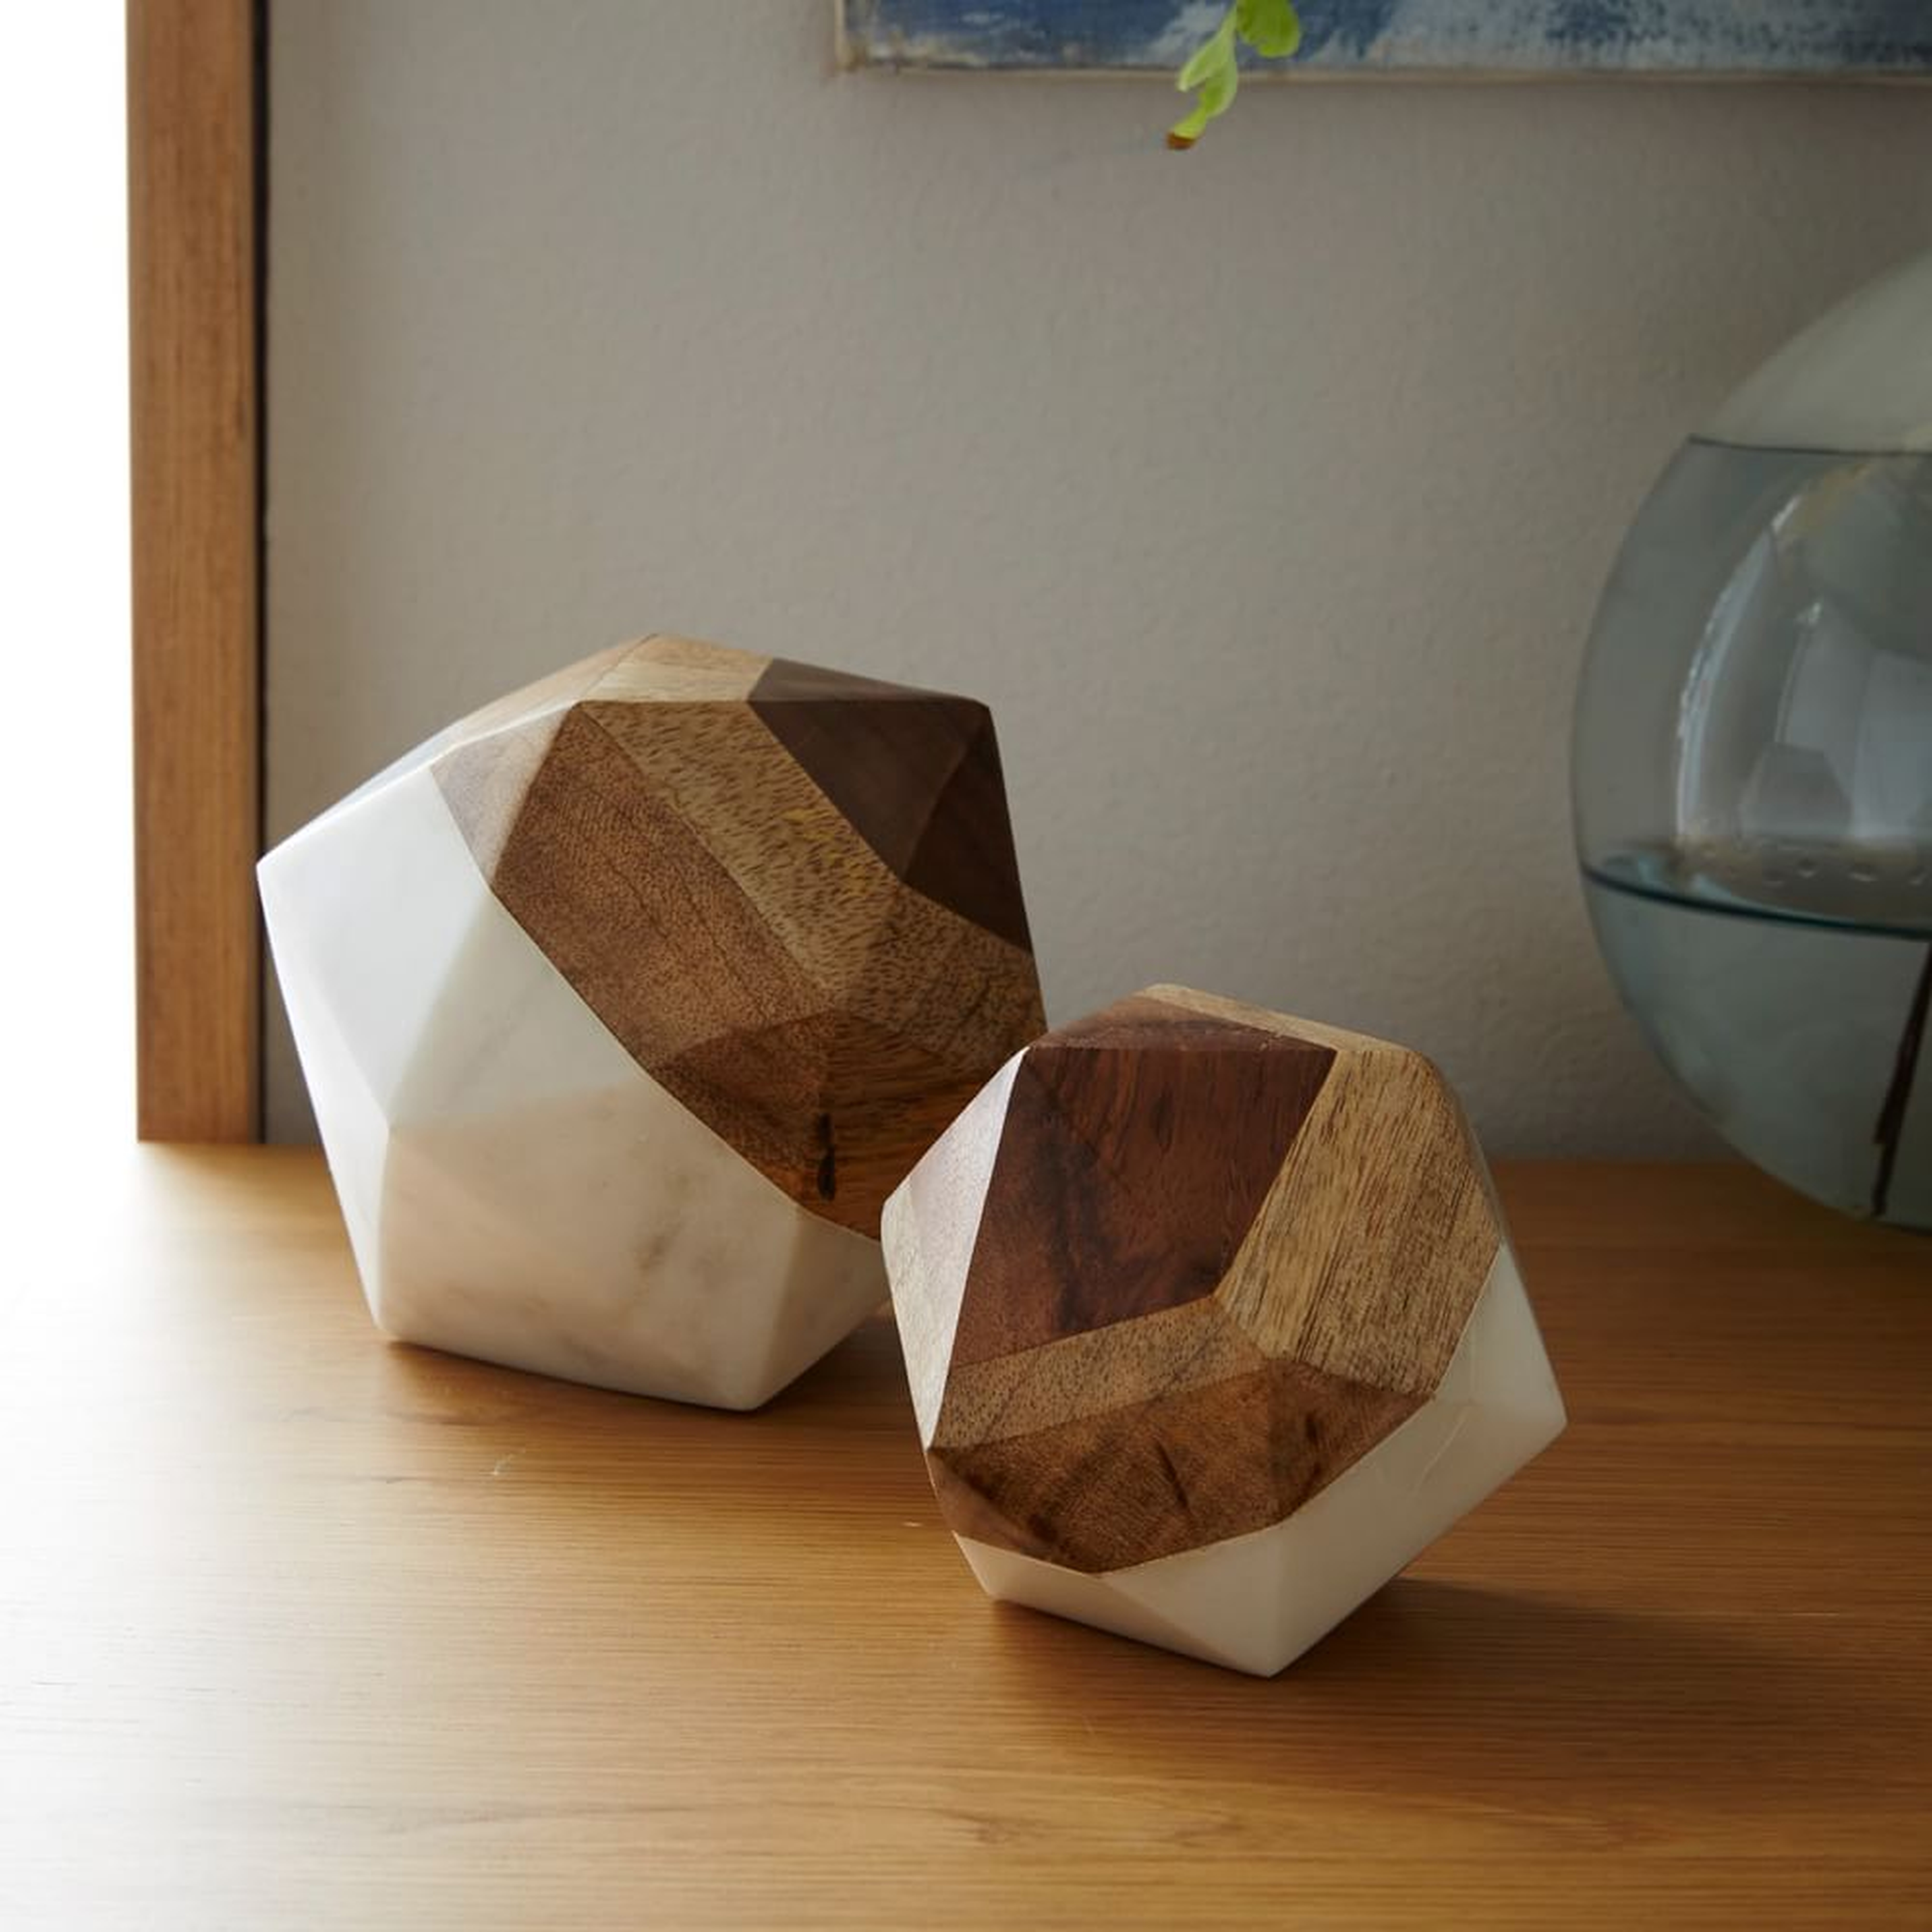 Marble & Wood Object, Large Octahedron, Set of 2 - West Elm